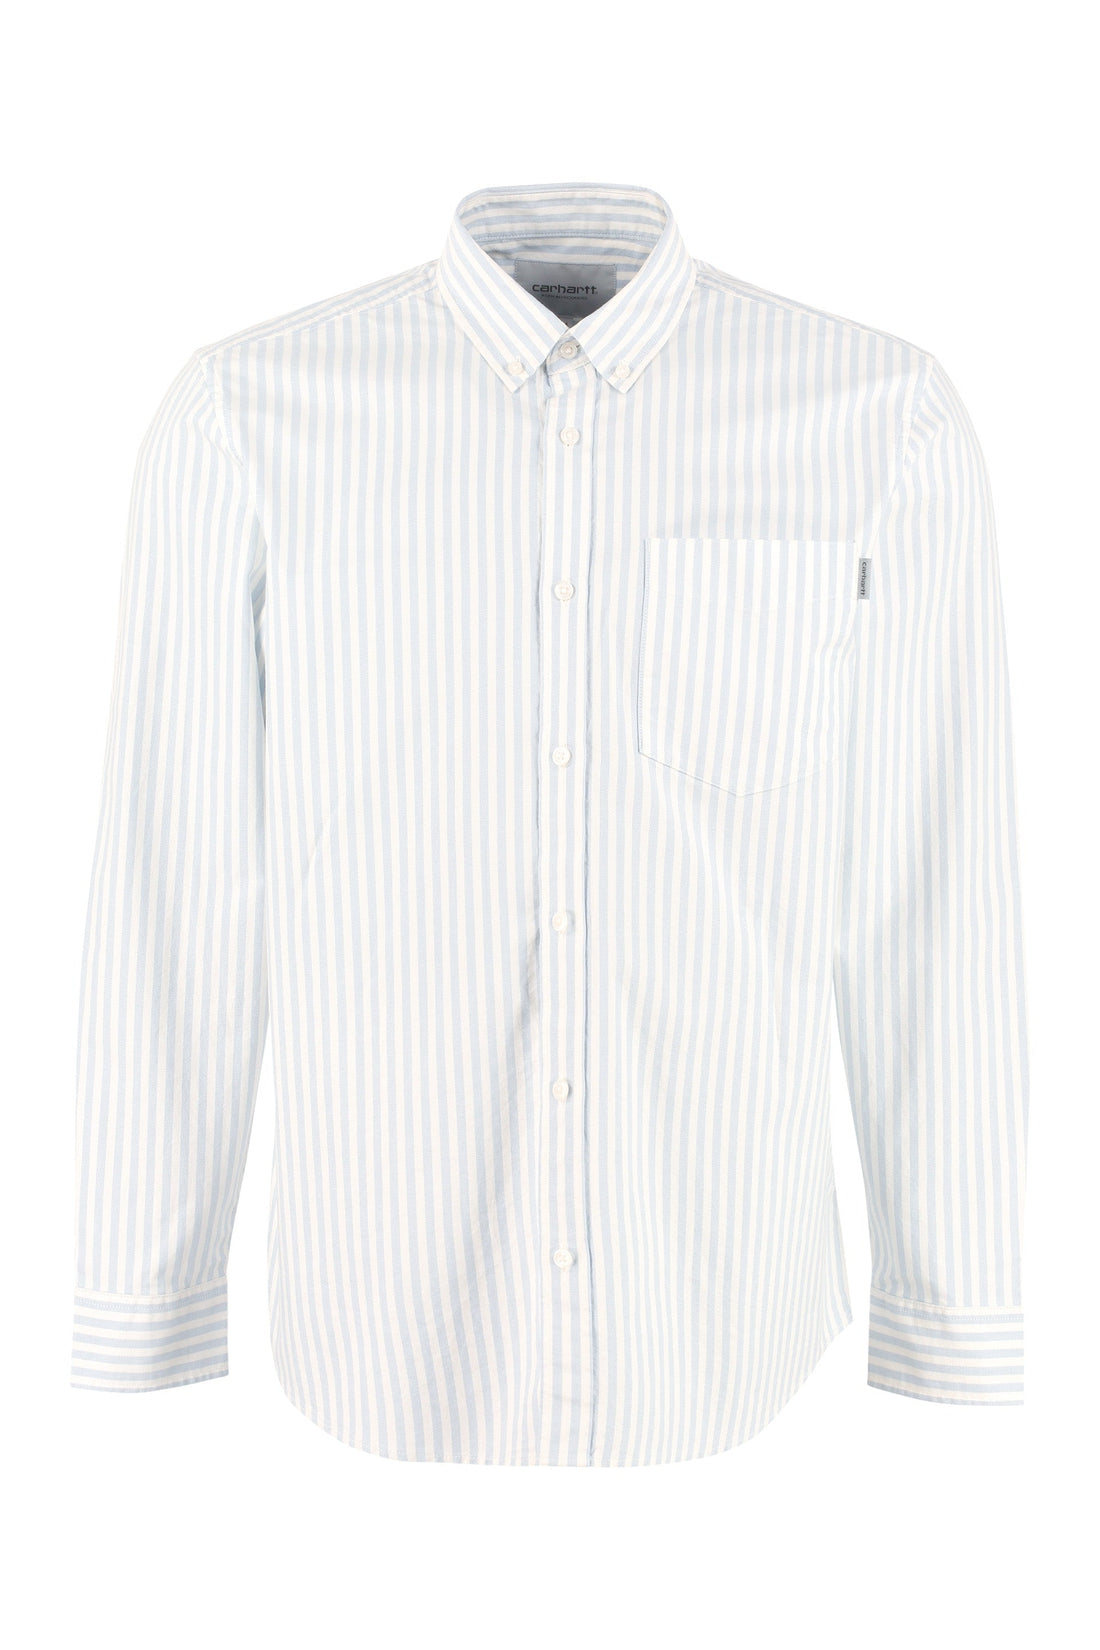 Carhartt-OUTLET-SALE-Simon cotton Oxford shirt-ARCHIVIST